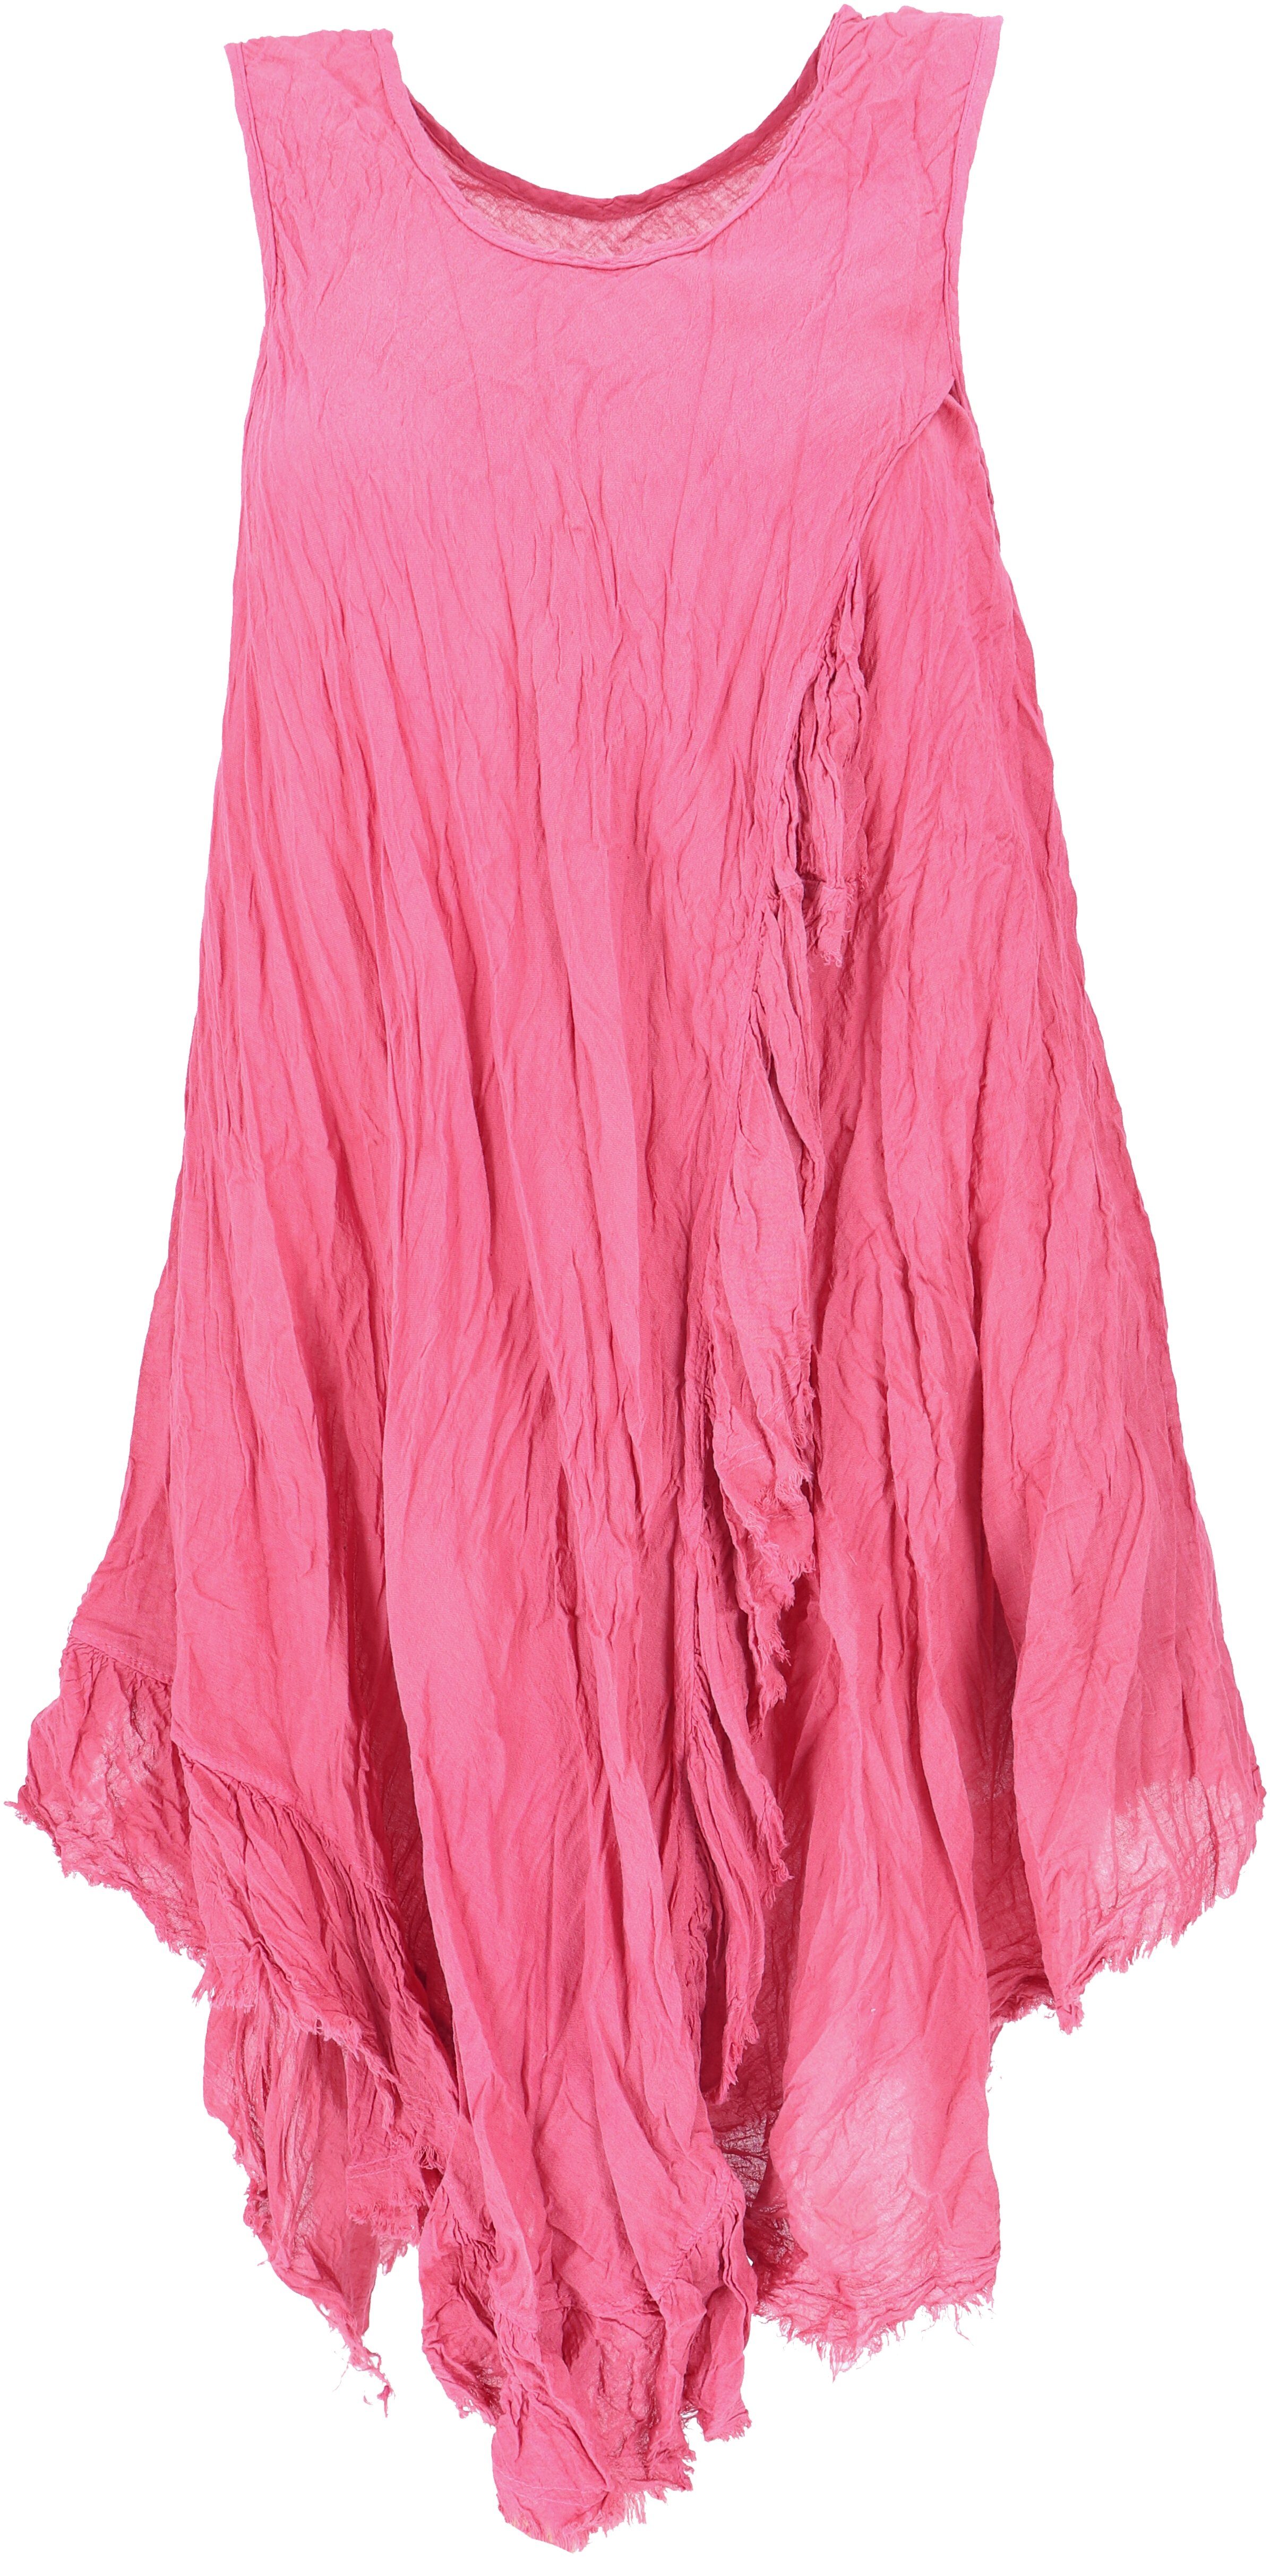 Guru-Shop Midikleid Boho Sommerkleid, luftiges Krinkelkleid,.. alternative Bekleidung pink